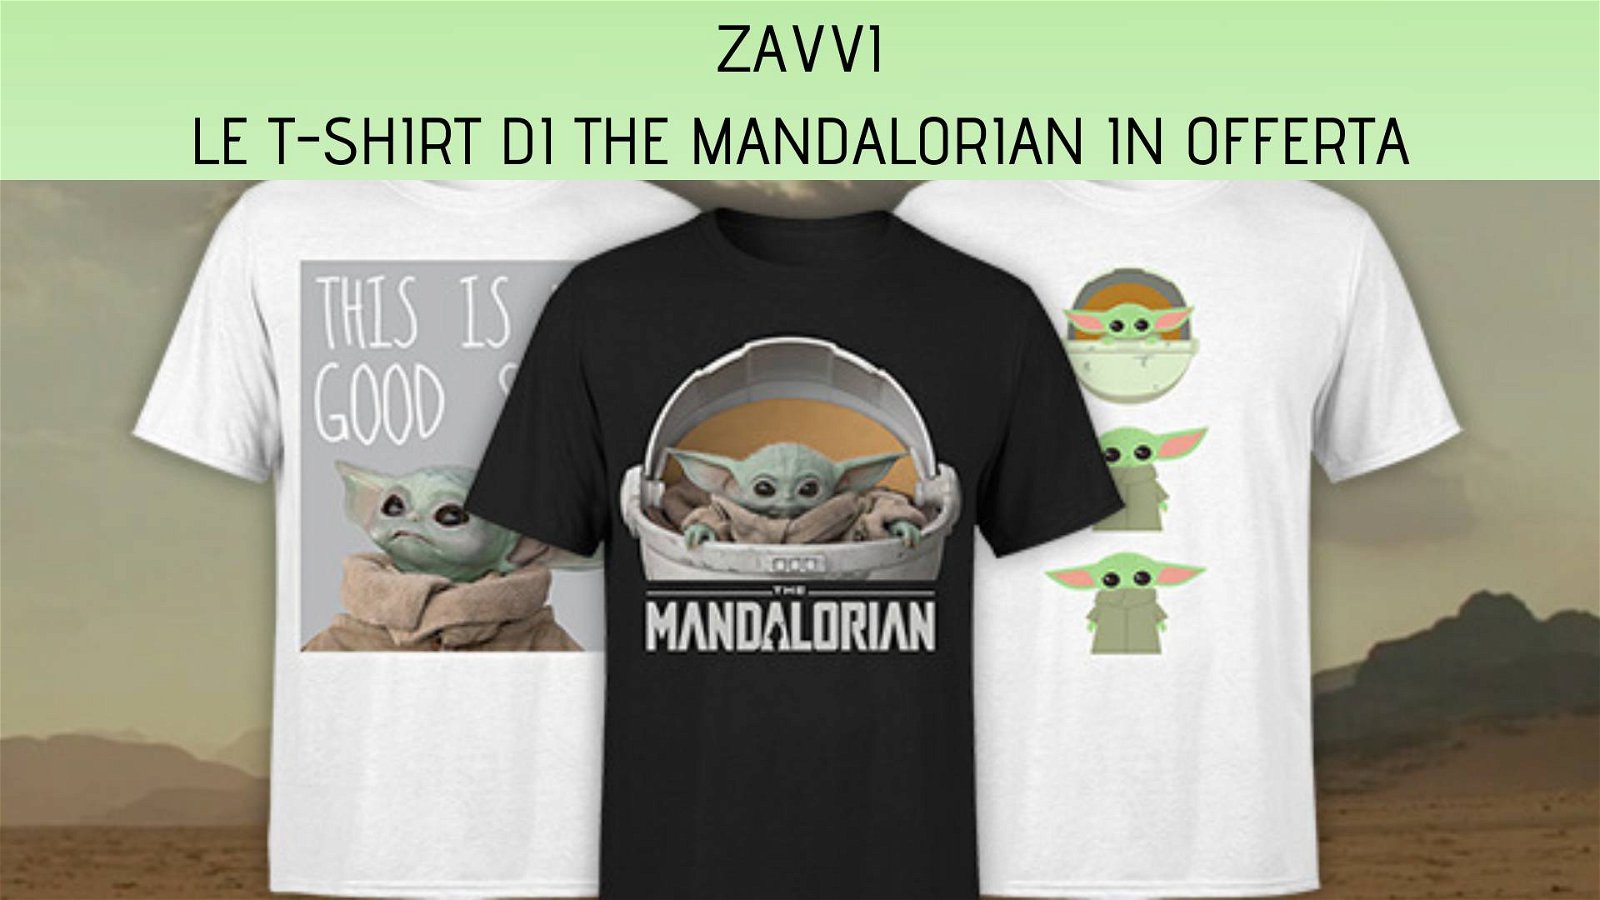 Immagine di Zavvi: tante T-shirt di The Mandalorian in offerta!